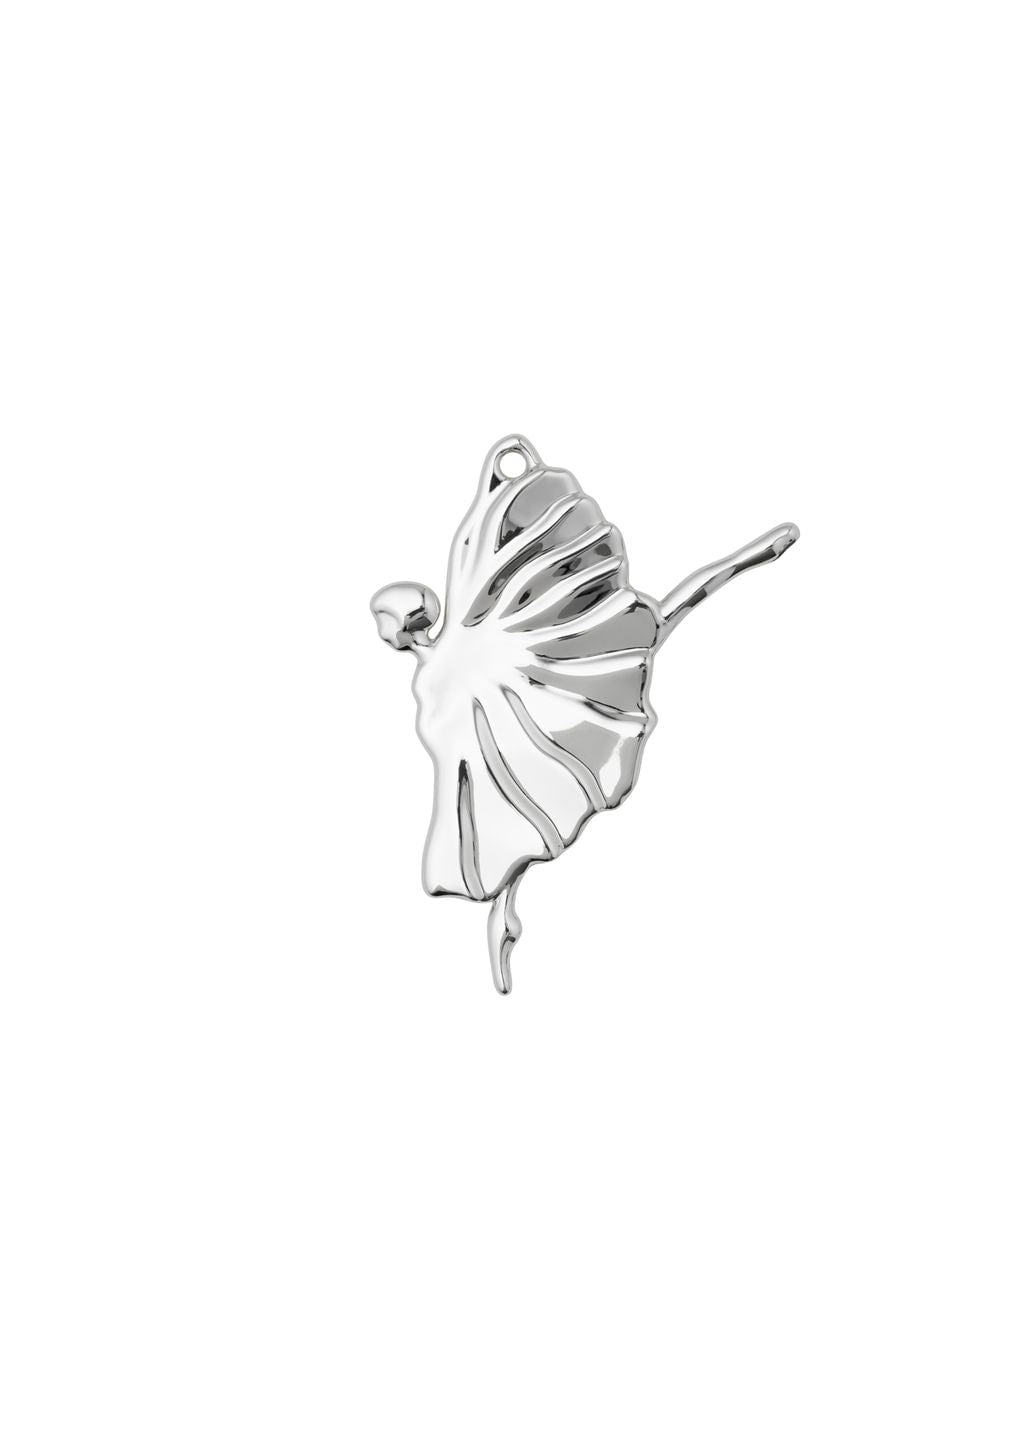 Rosendahl Karen Blixen Dancer H7 cm, argento placcato